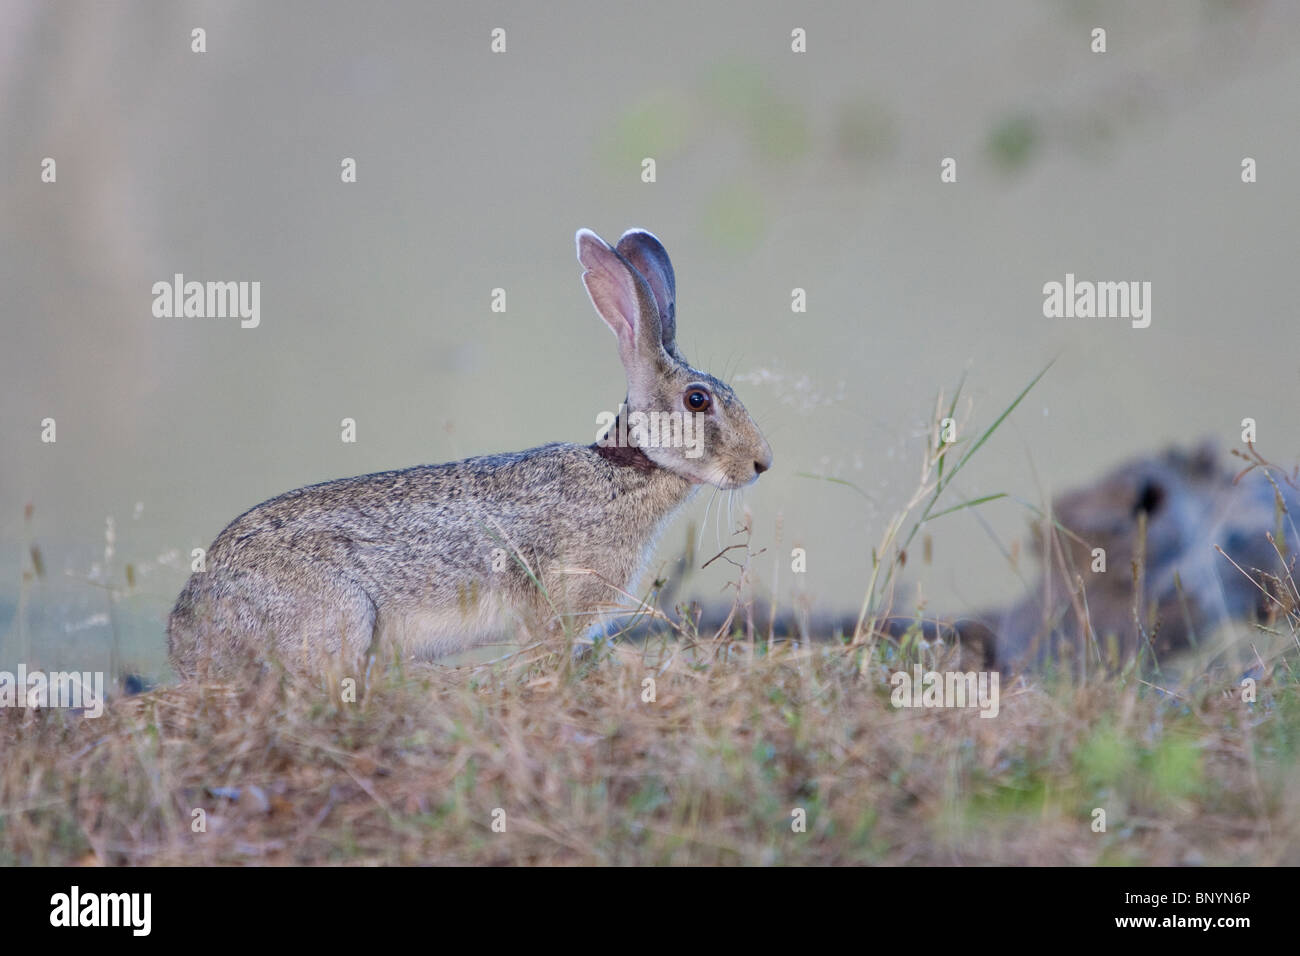 Indian Hare, Indischer Hase, Lepus negricollis, black-naped hare Yala National park Sri Lanka Stock Photo